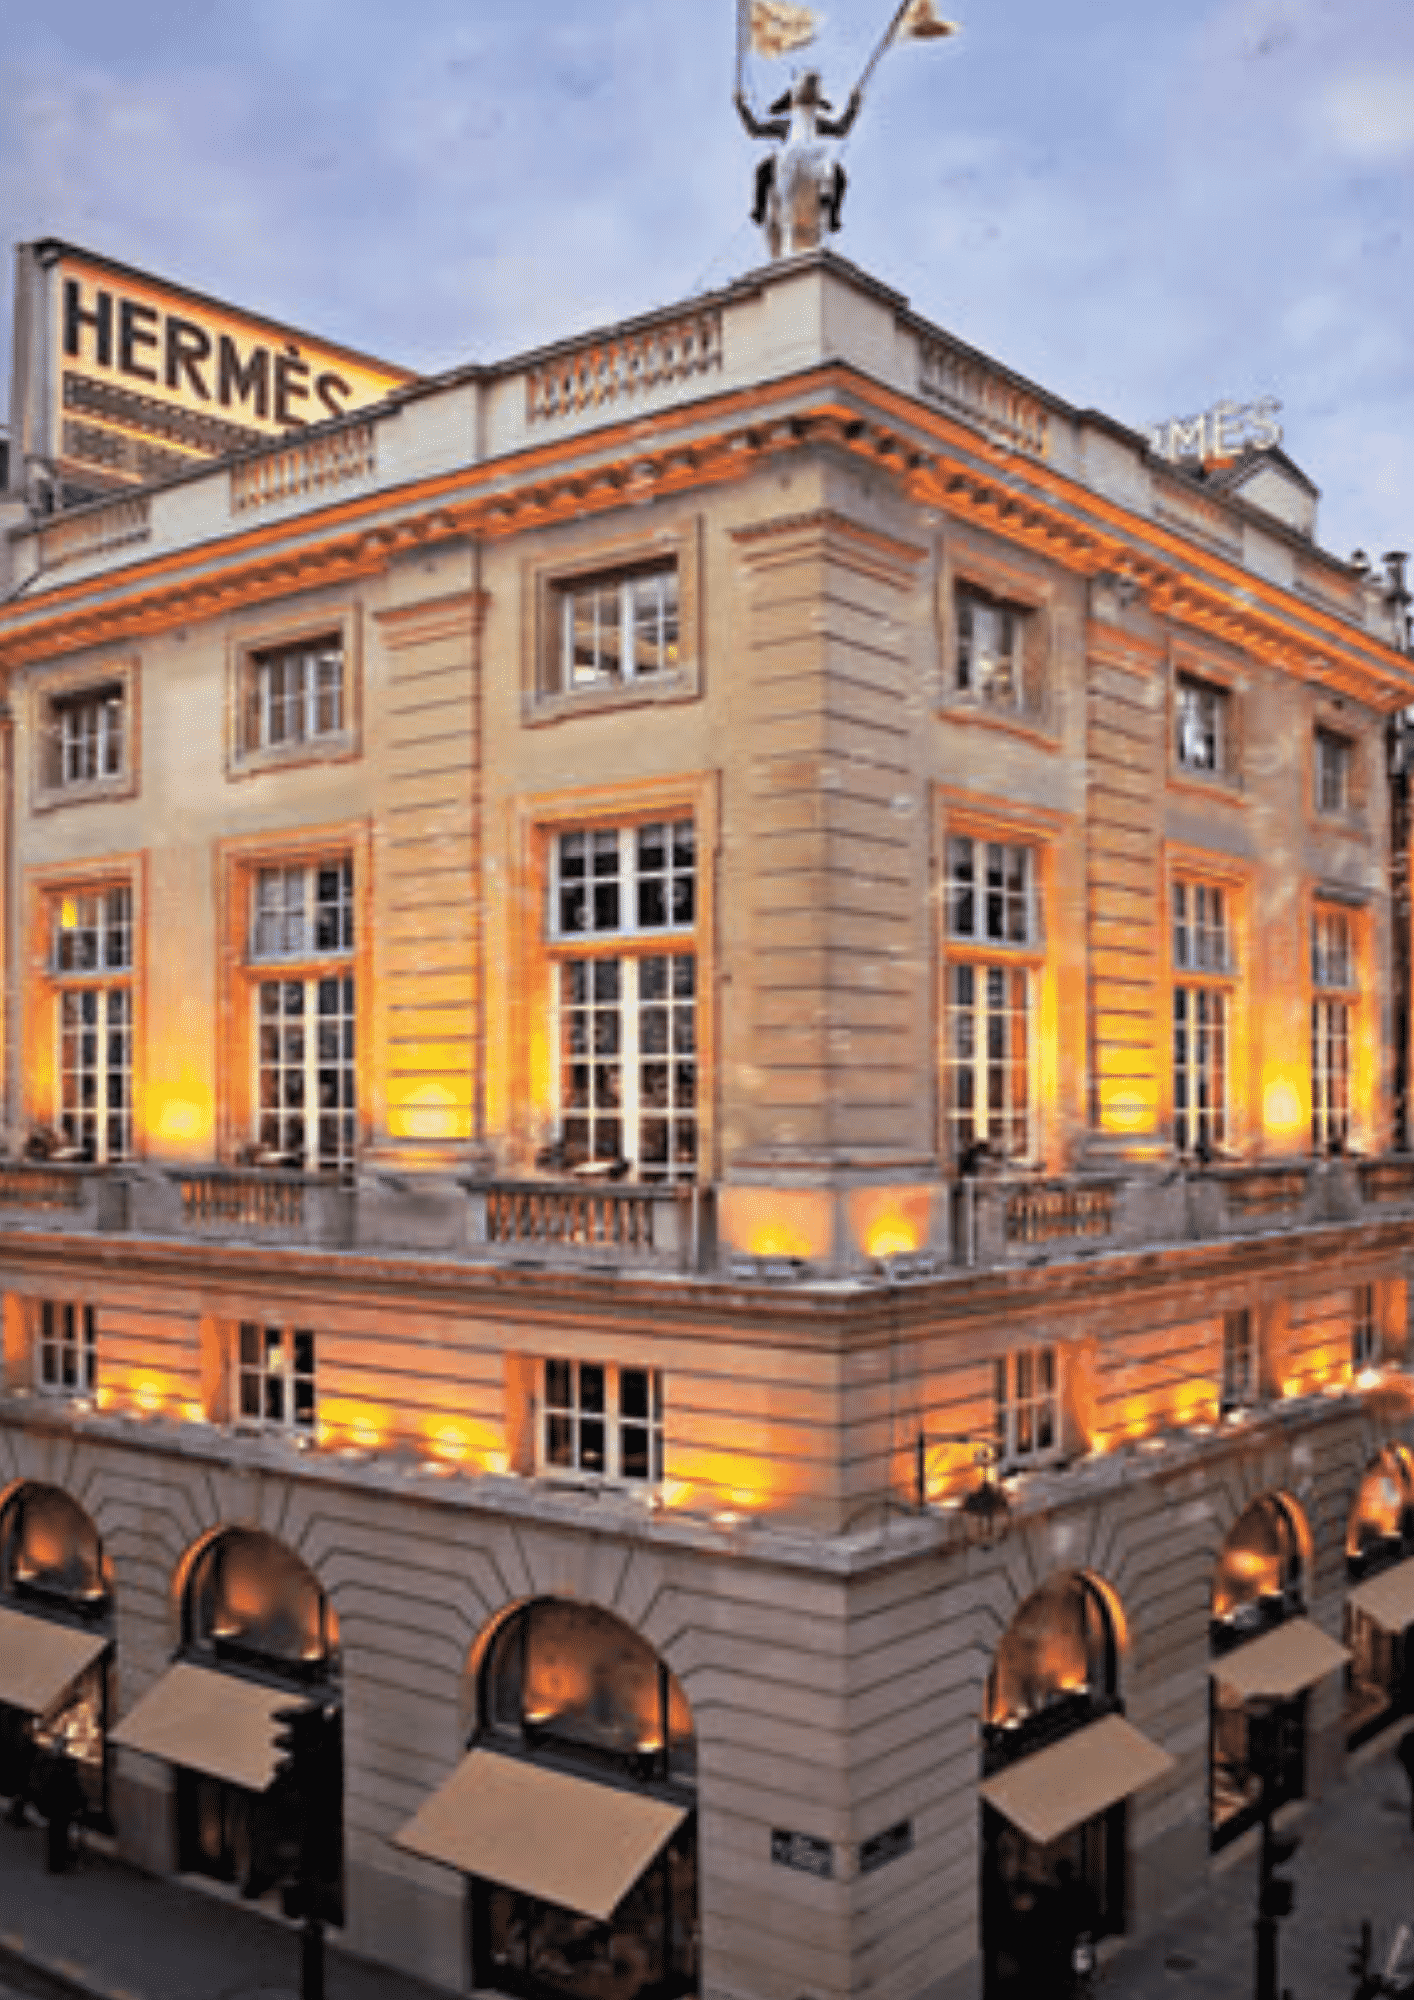 Histoire d'Hermès : la marque synonyme de luxe et d'exclusivité